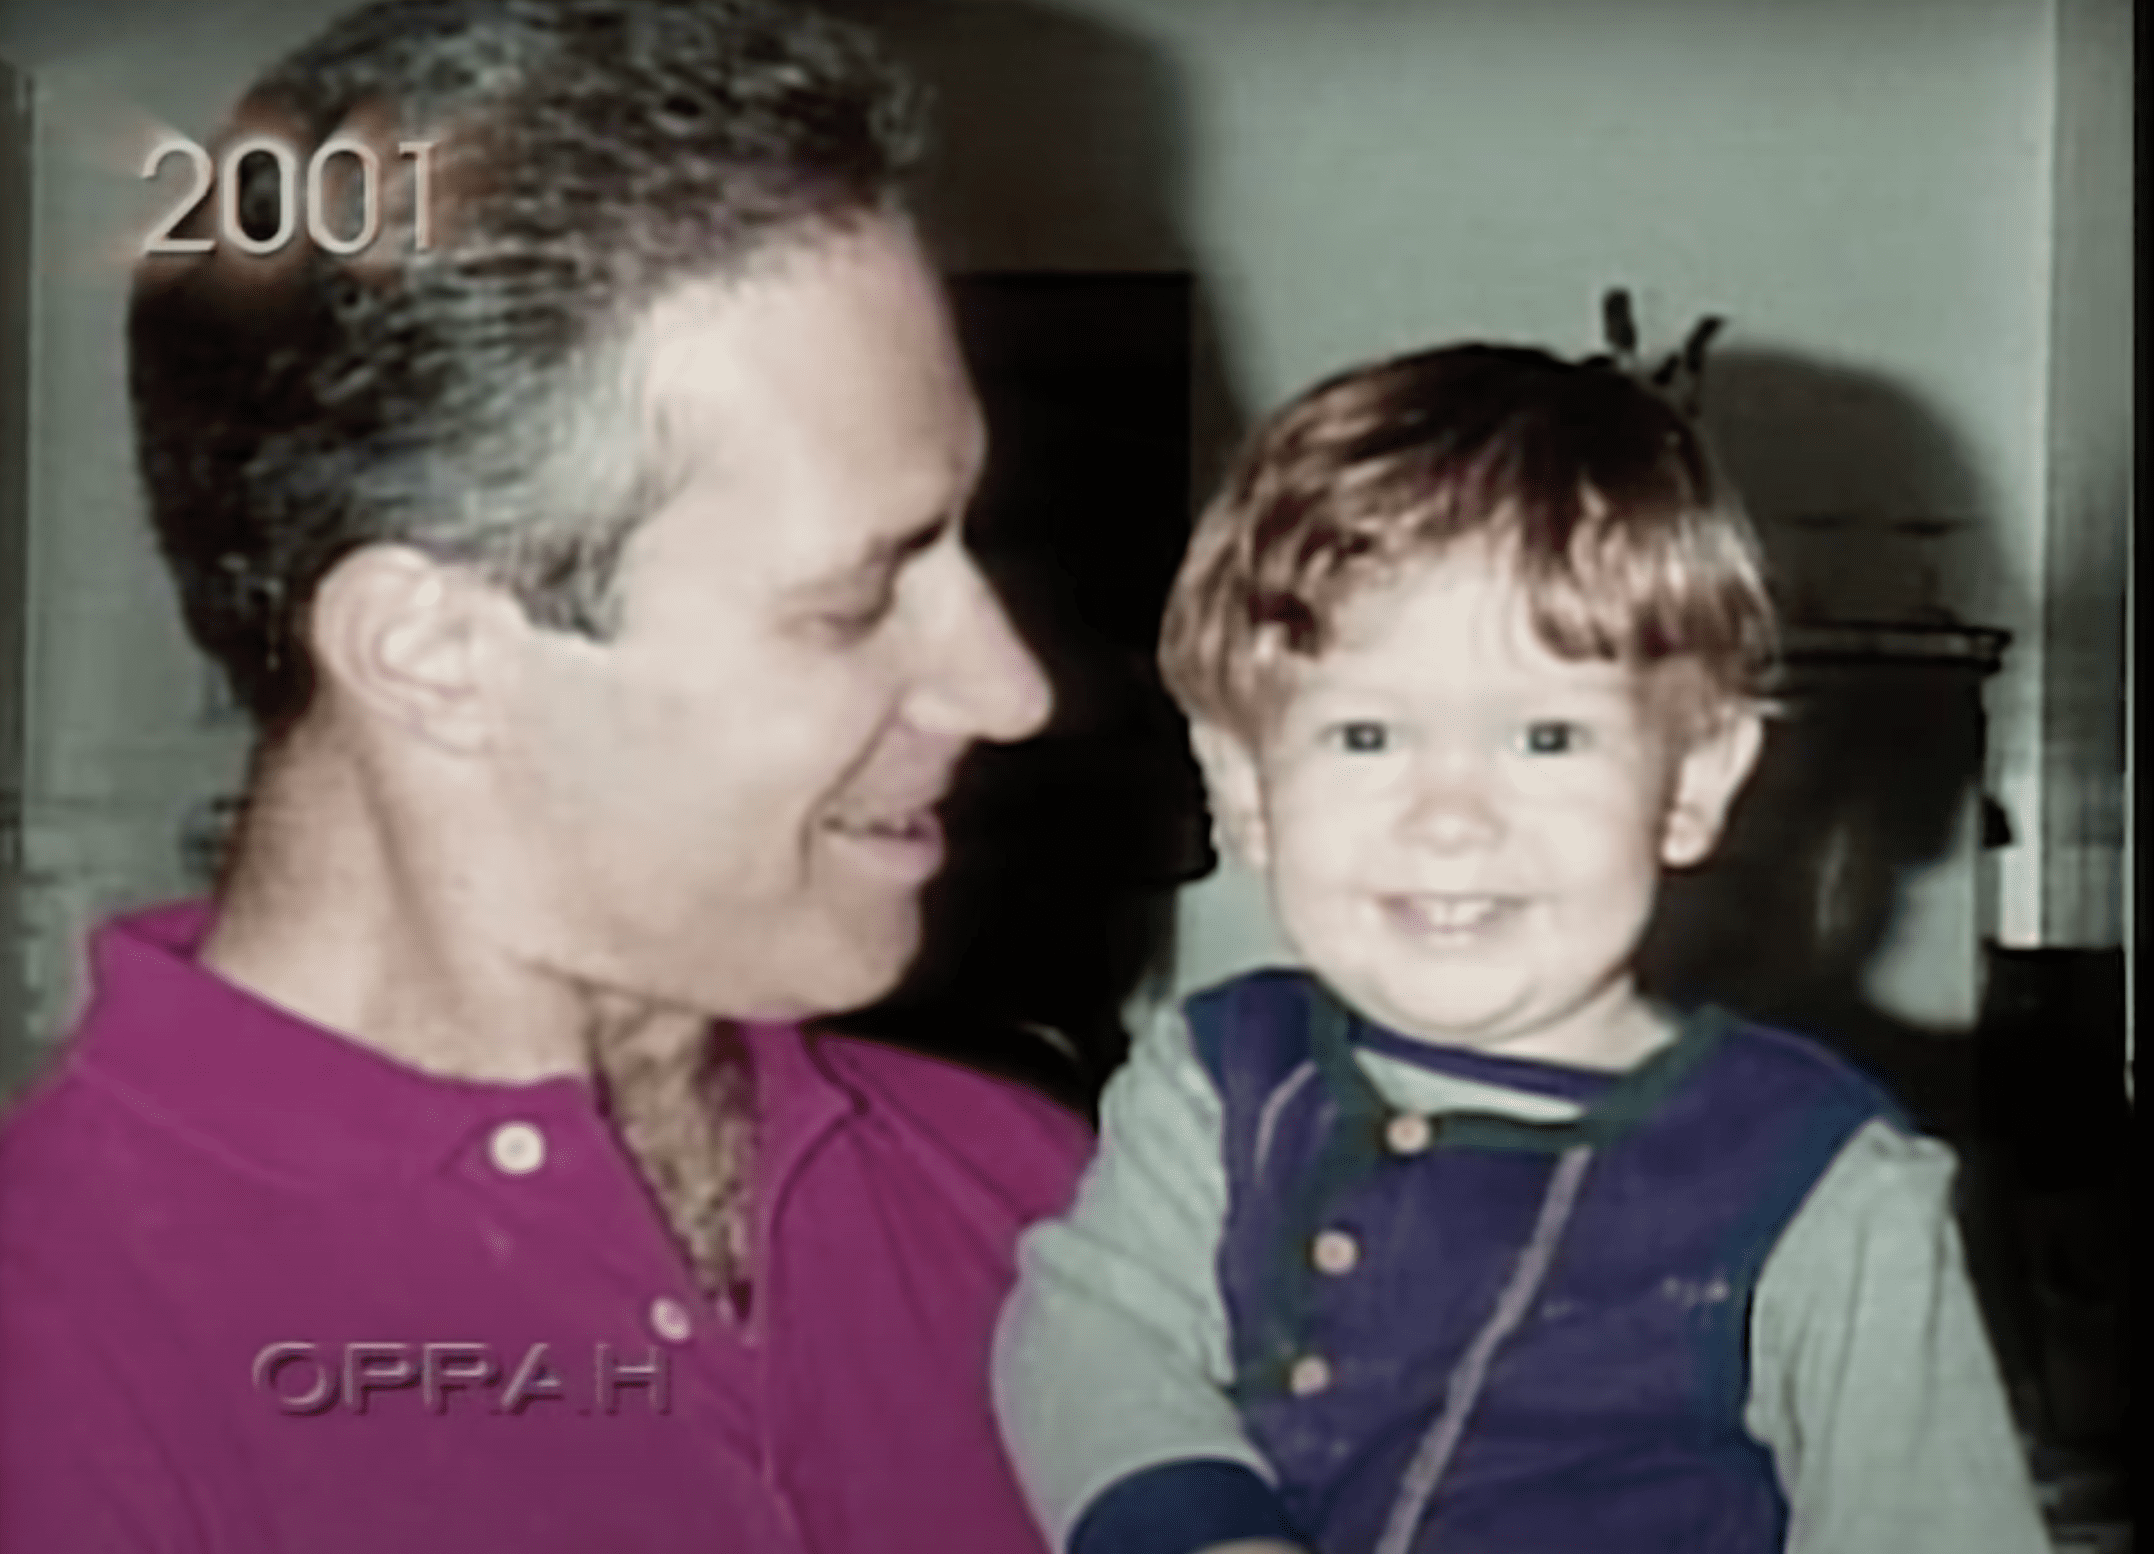 Ben Goeller mit seinem Sohn Bryan auf dem Arm. | Quelle: Youtube.com/OWN